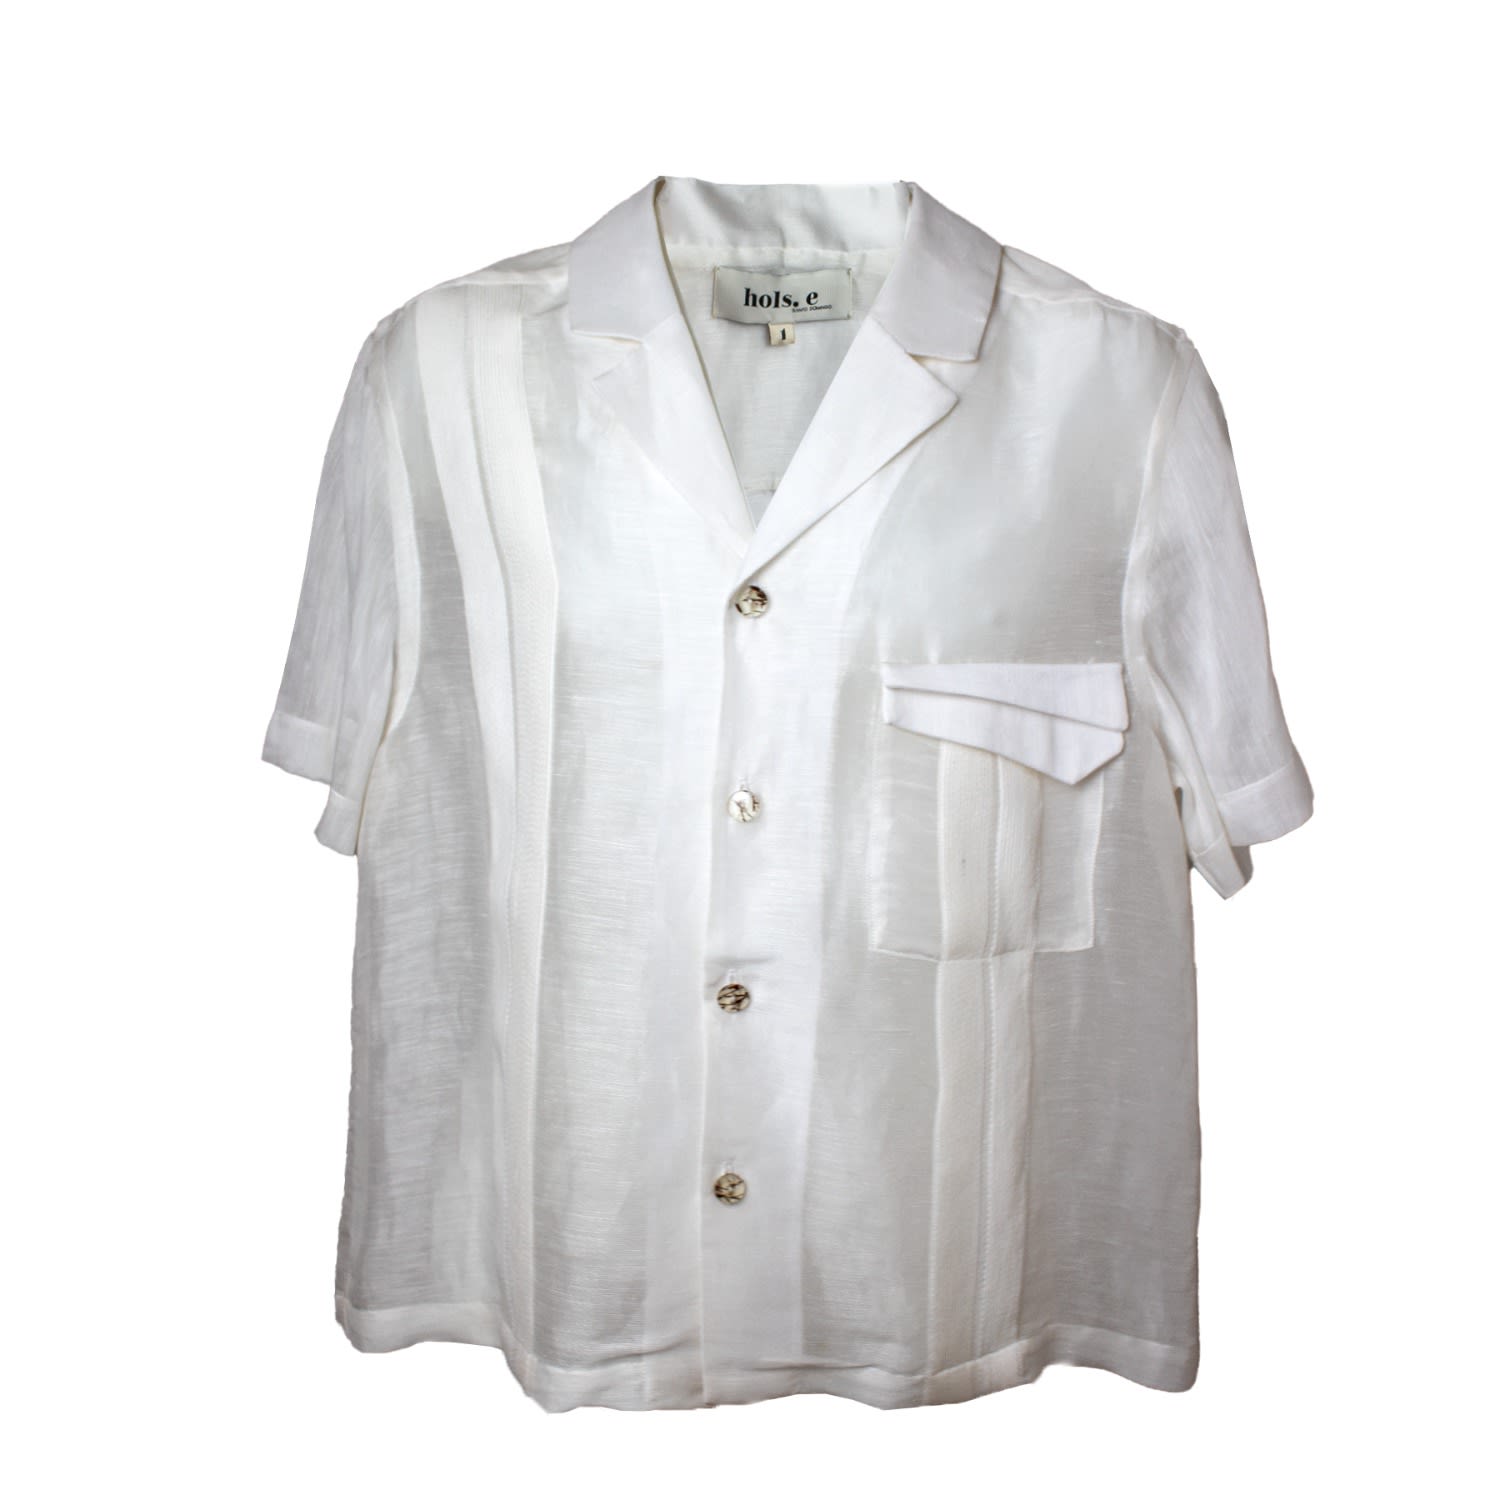 Men's Latino Boyfriend Reloaded Shirt Silk Linen White Small hols. e